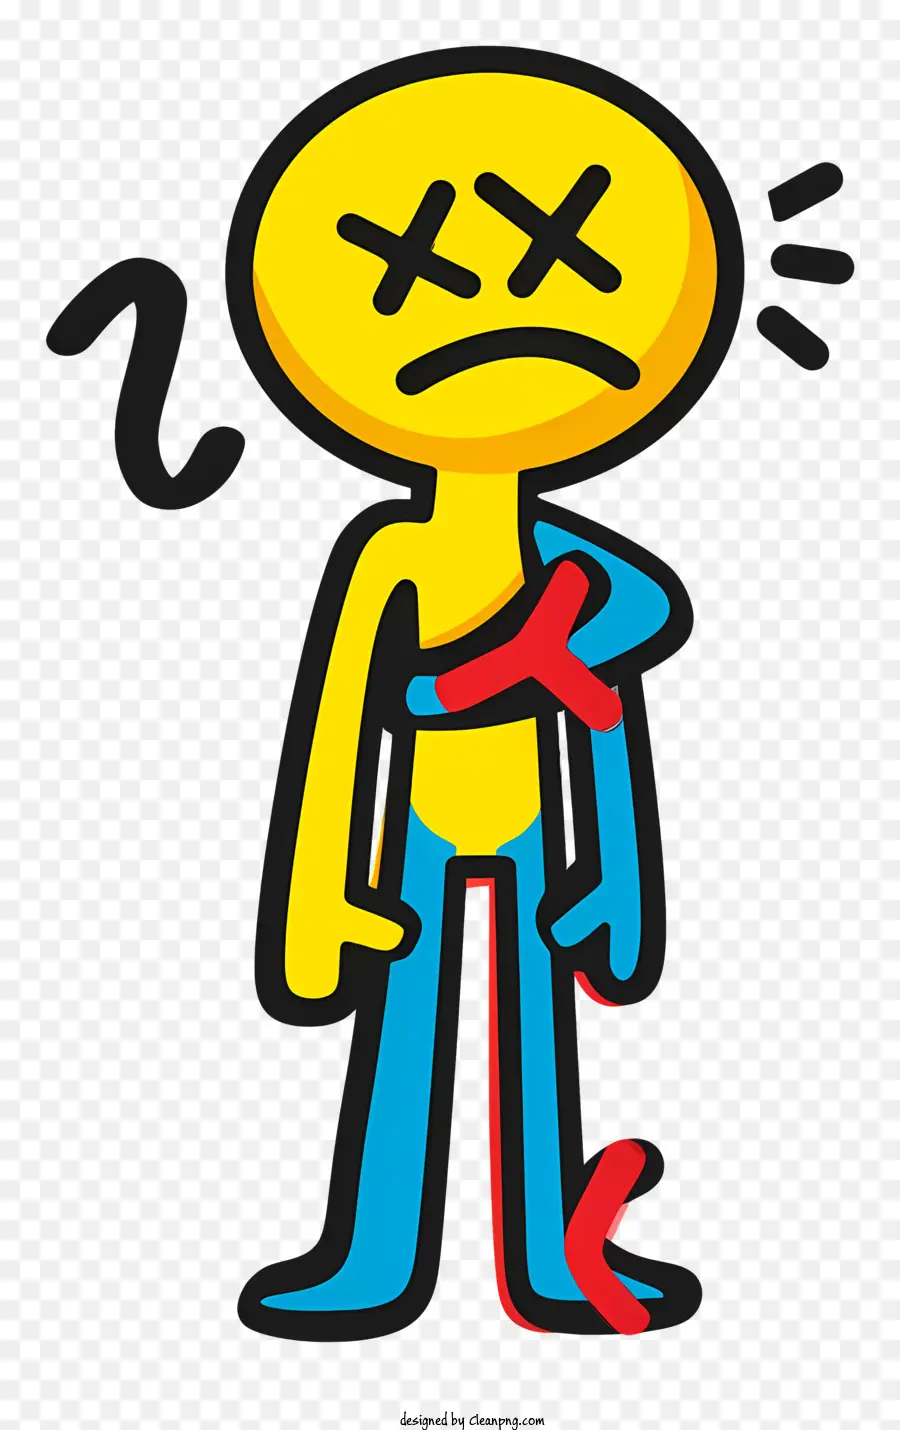 nhân vật hoạt hình nghệ thuật dễ thương mặc quần màu đỏ áo vàng - Nhân vật hoạt hình gặp nạn với một cánh tay bị gãy